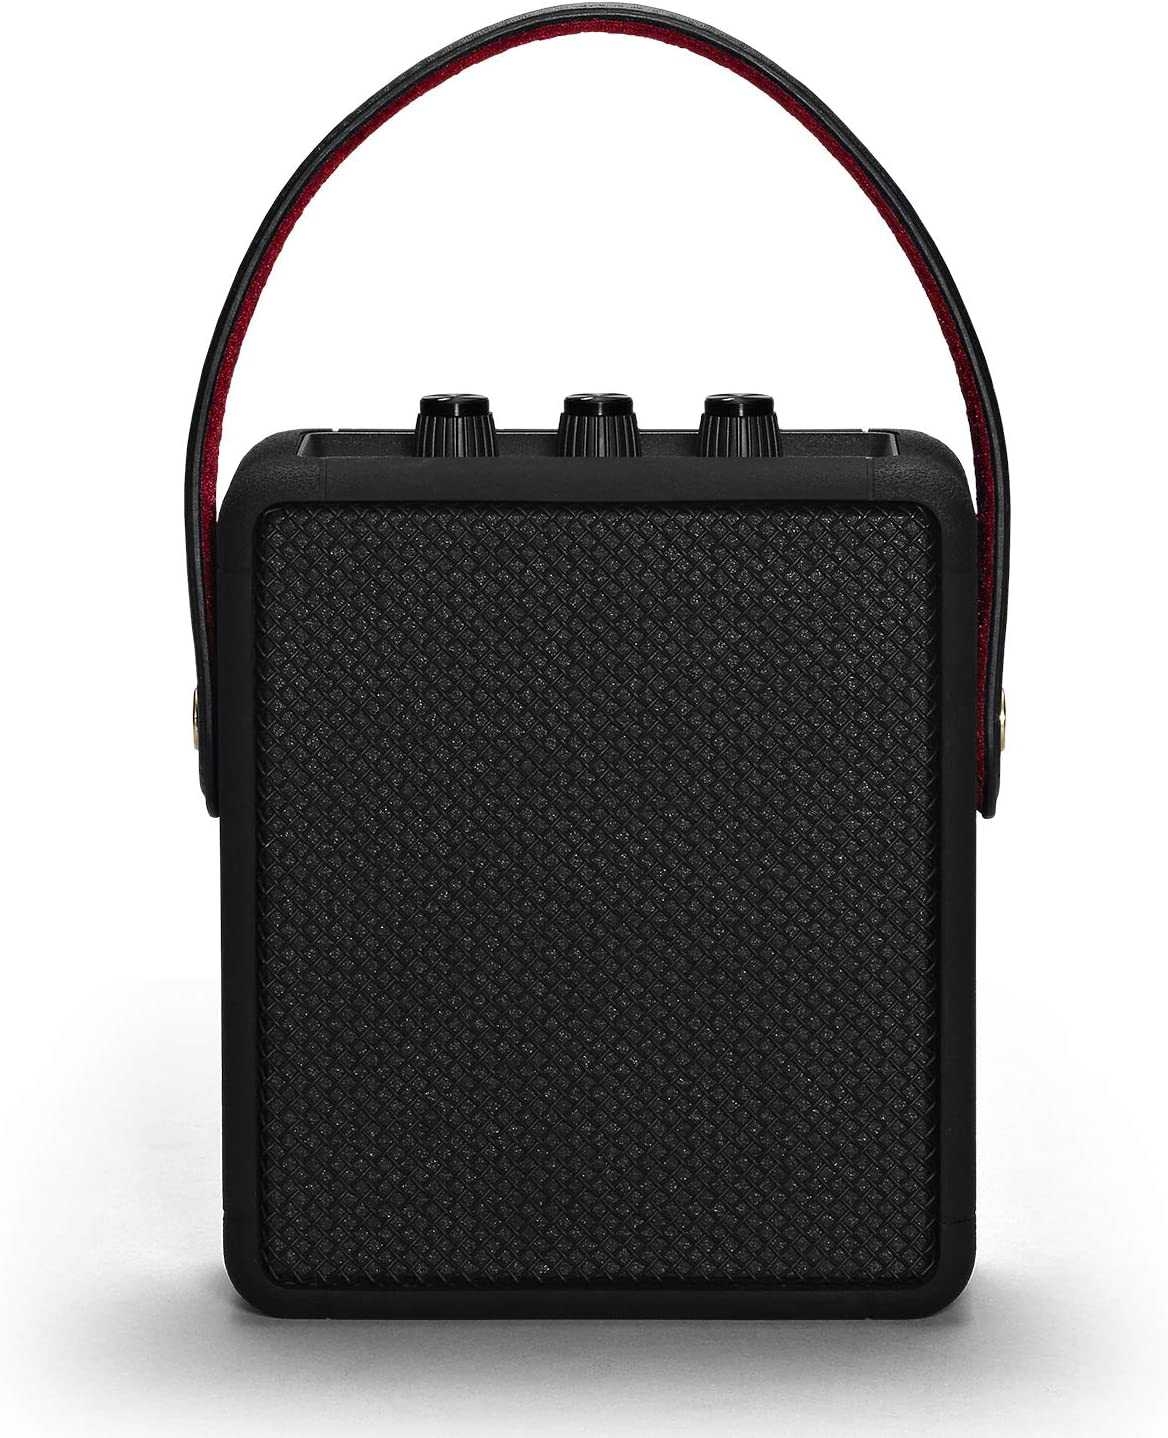 مكبر صوت Marshall - Stockwell 2 Wireless Stereo Speaker - أسود